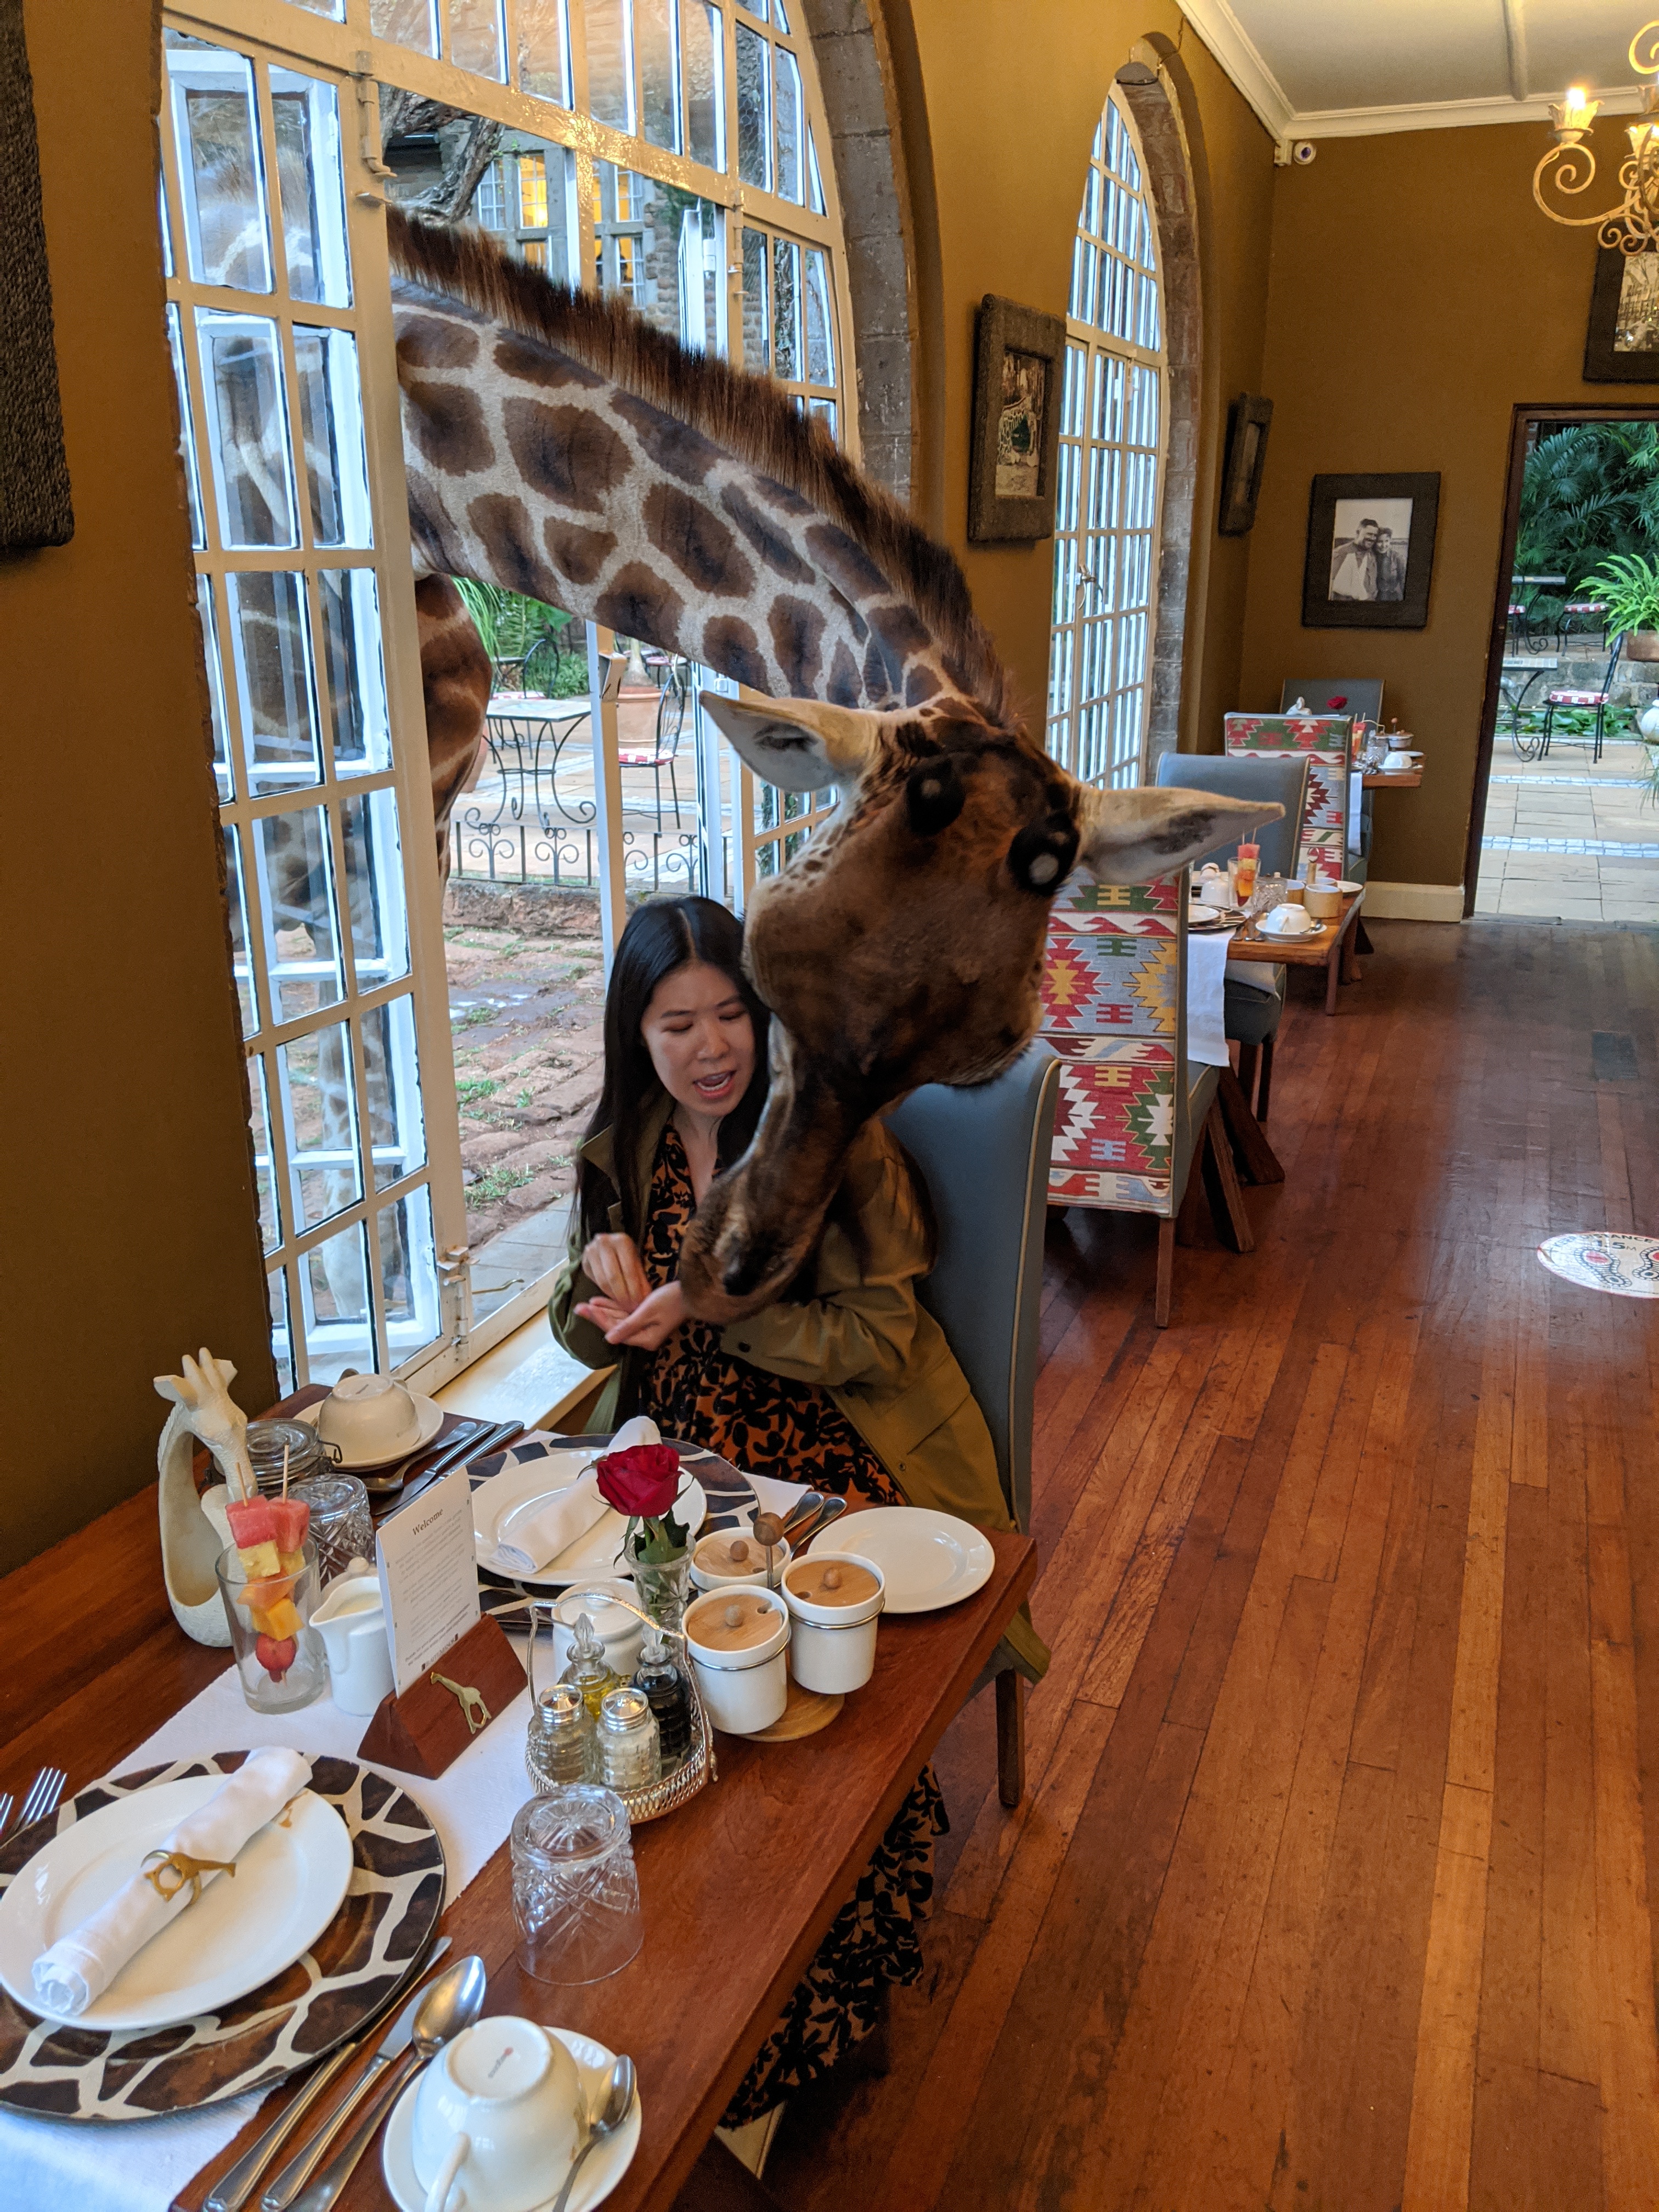 Hungry giraffes at Giraffe Manor